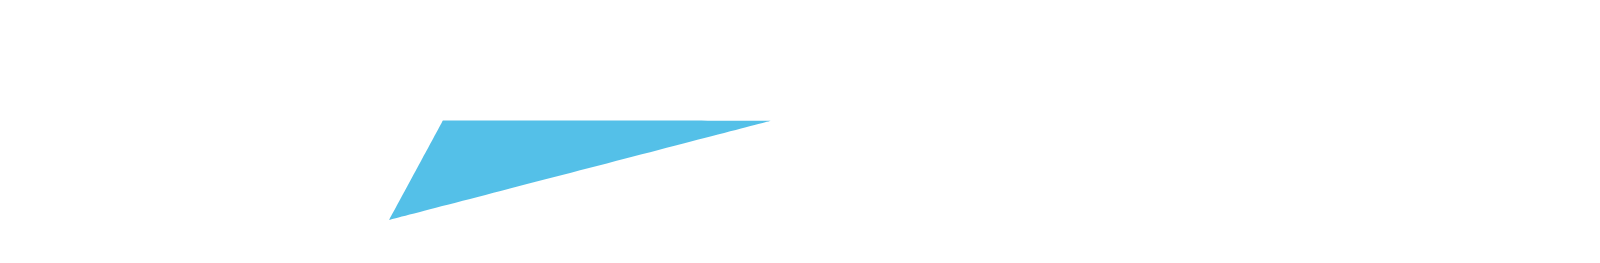 Jabil logo grand pour les fonds sombres (PNG transparent)